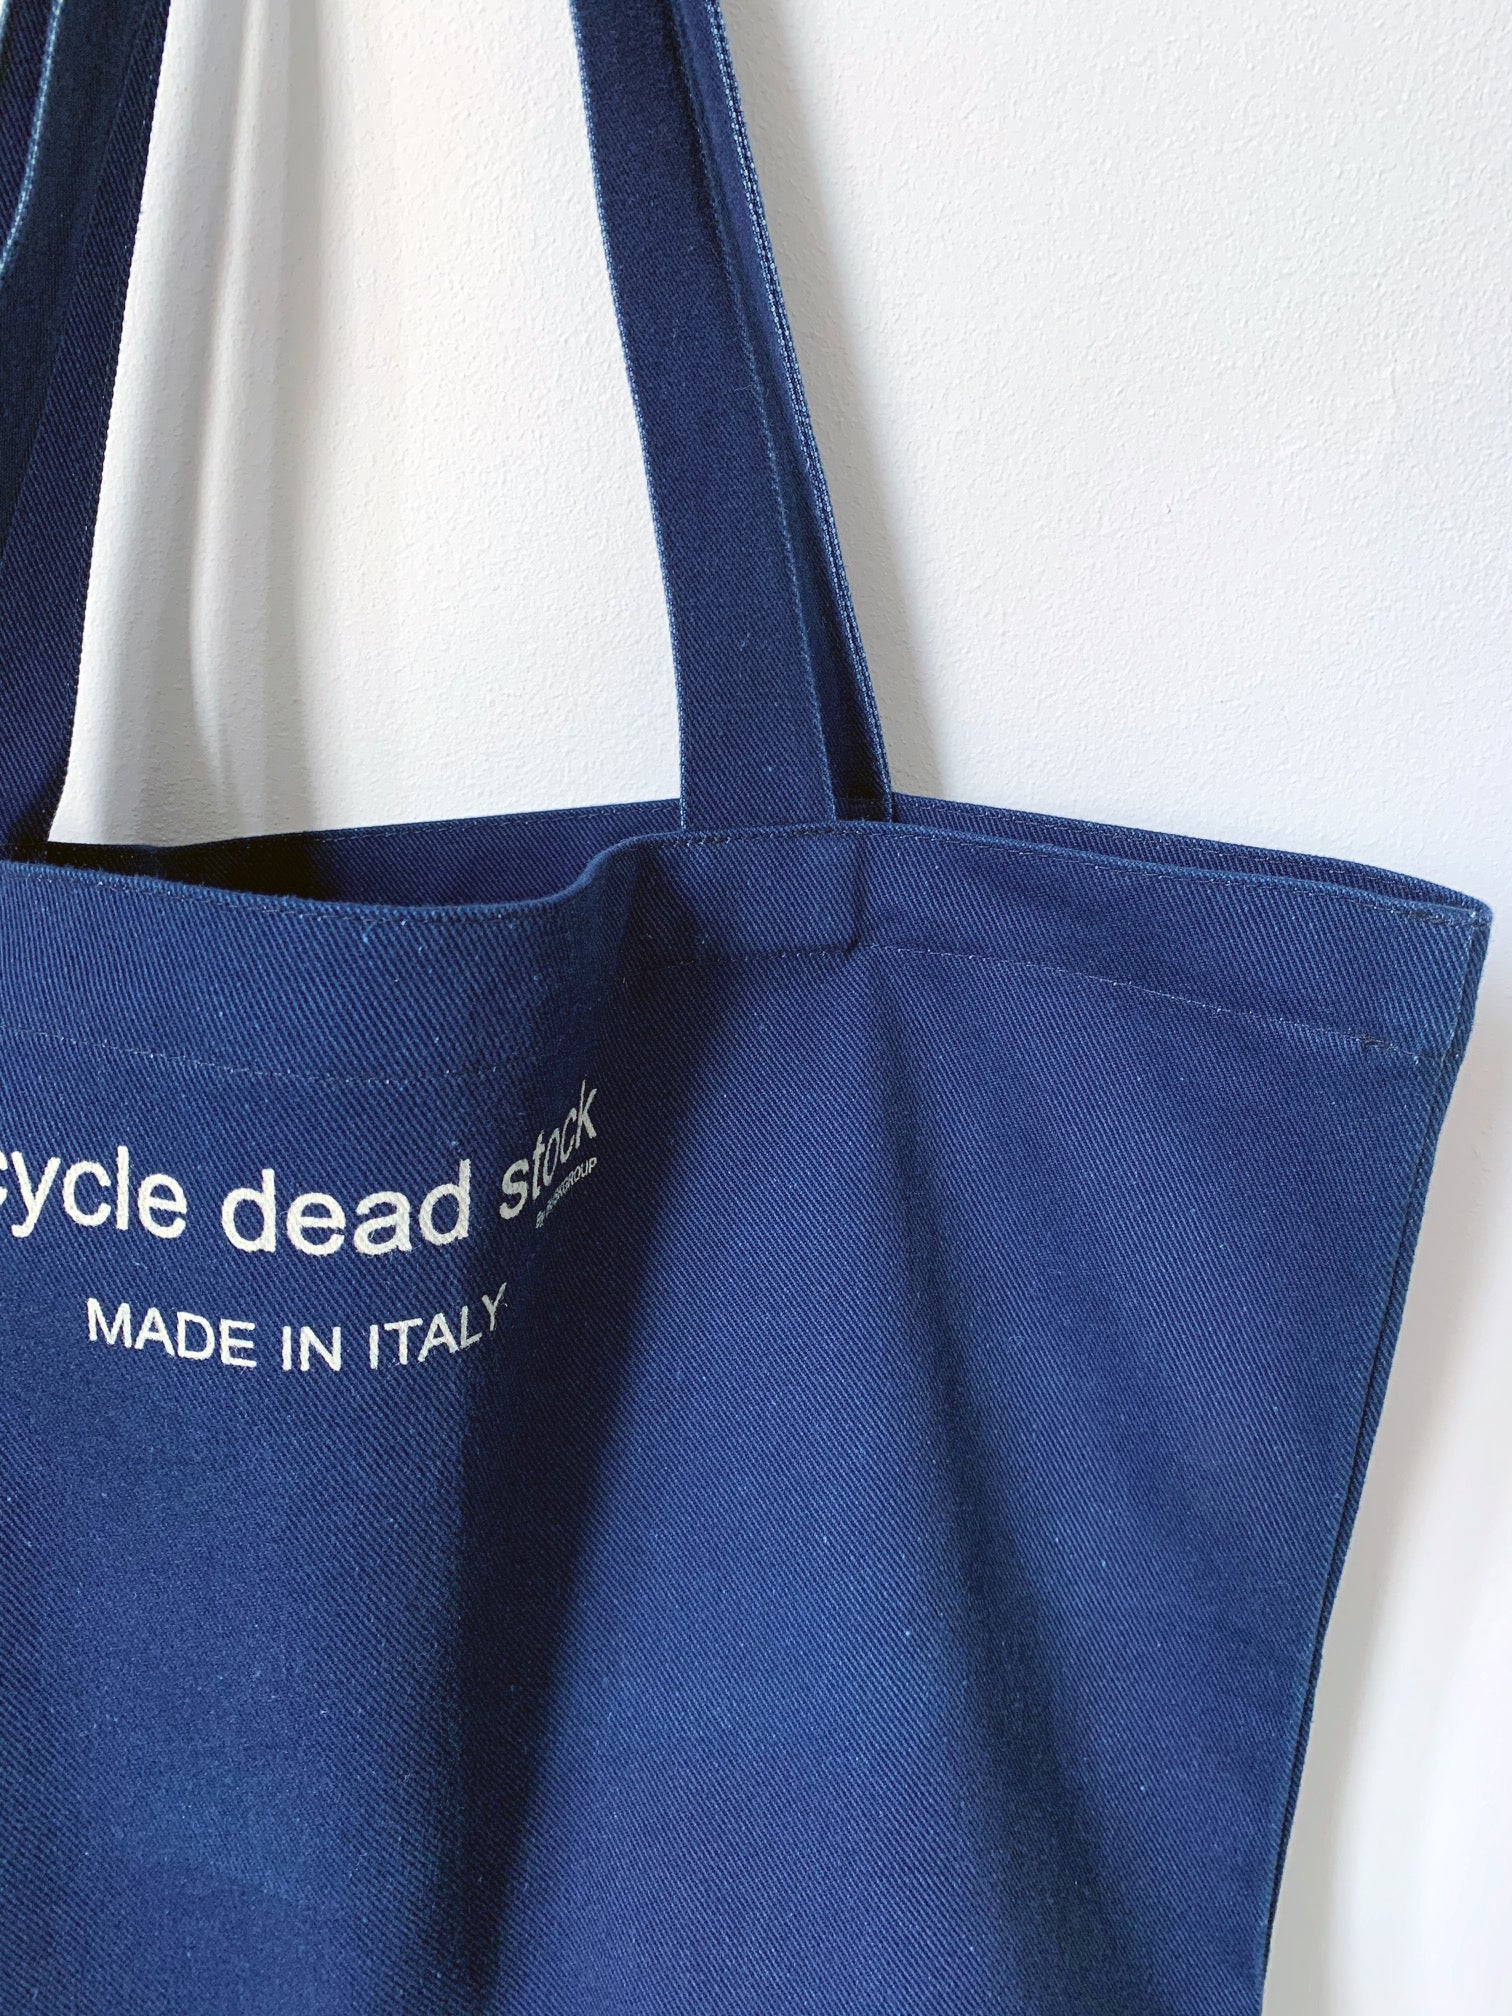 Recycle Dead Stock // Bag // Indigo Blue – Heavy Cotton